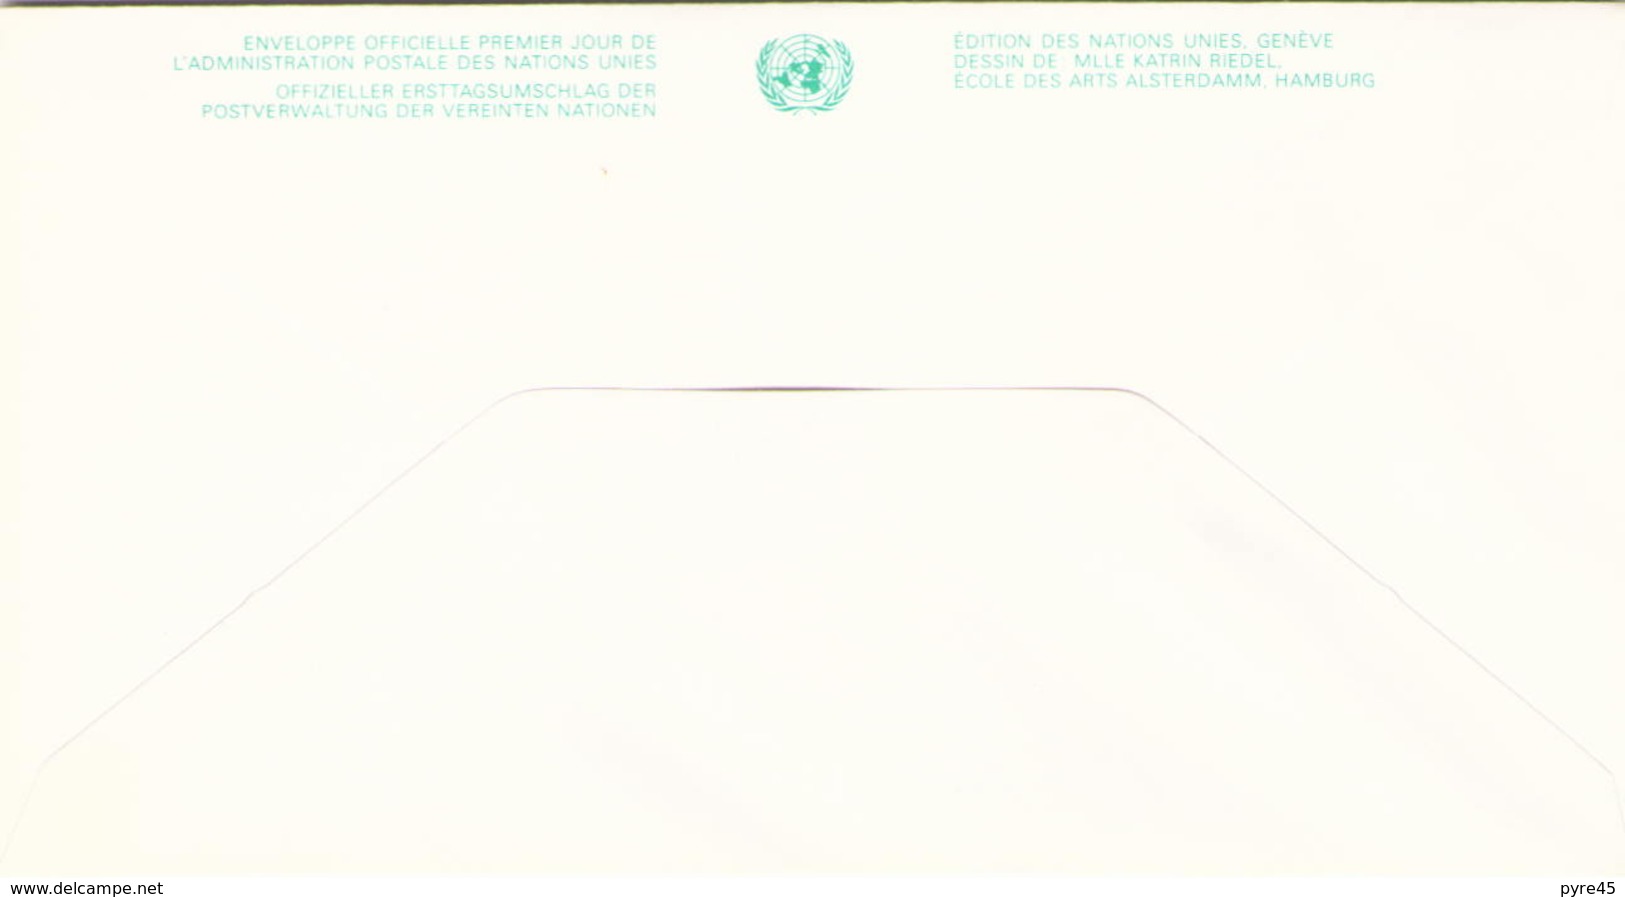 NATIONS UNIES FDC DU 24 OCTOBRE 1991 NEW YORK 40° ANNIVERSAIRE DE L ADMINISTRATION POSTALE DES NATIONS UNIES - Briefe U. Dokumente